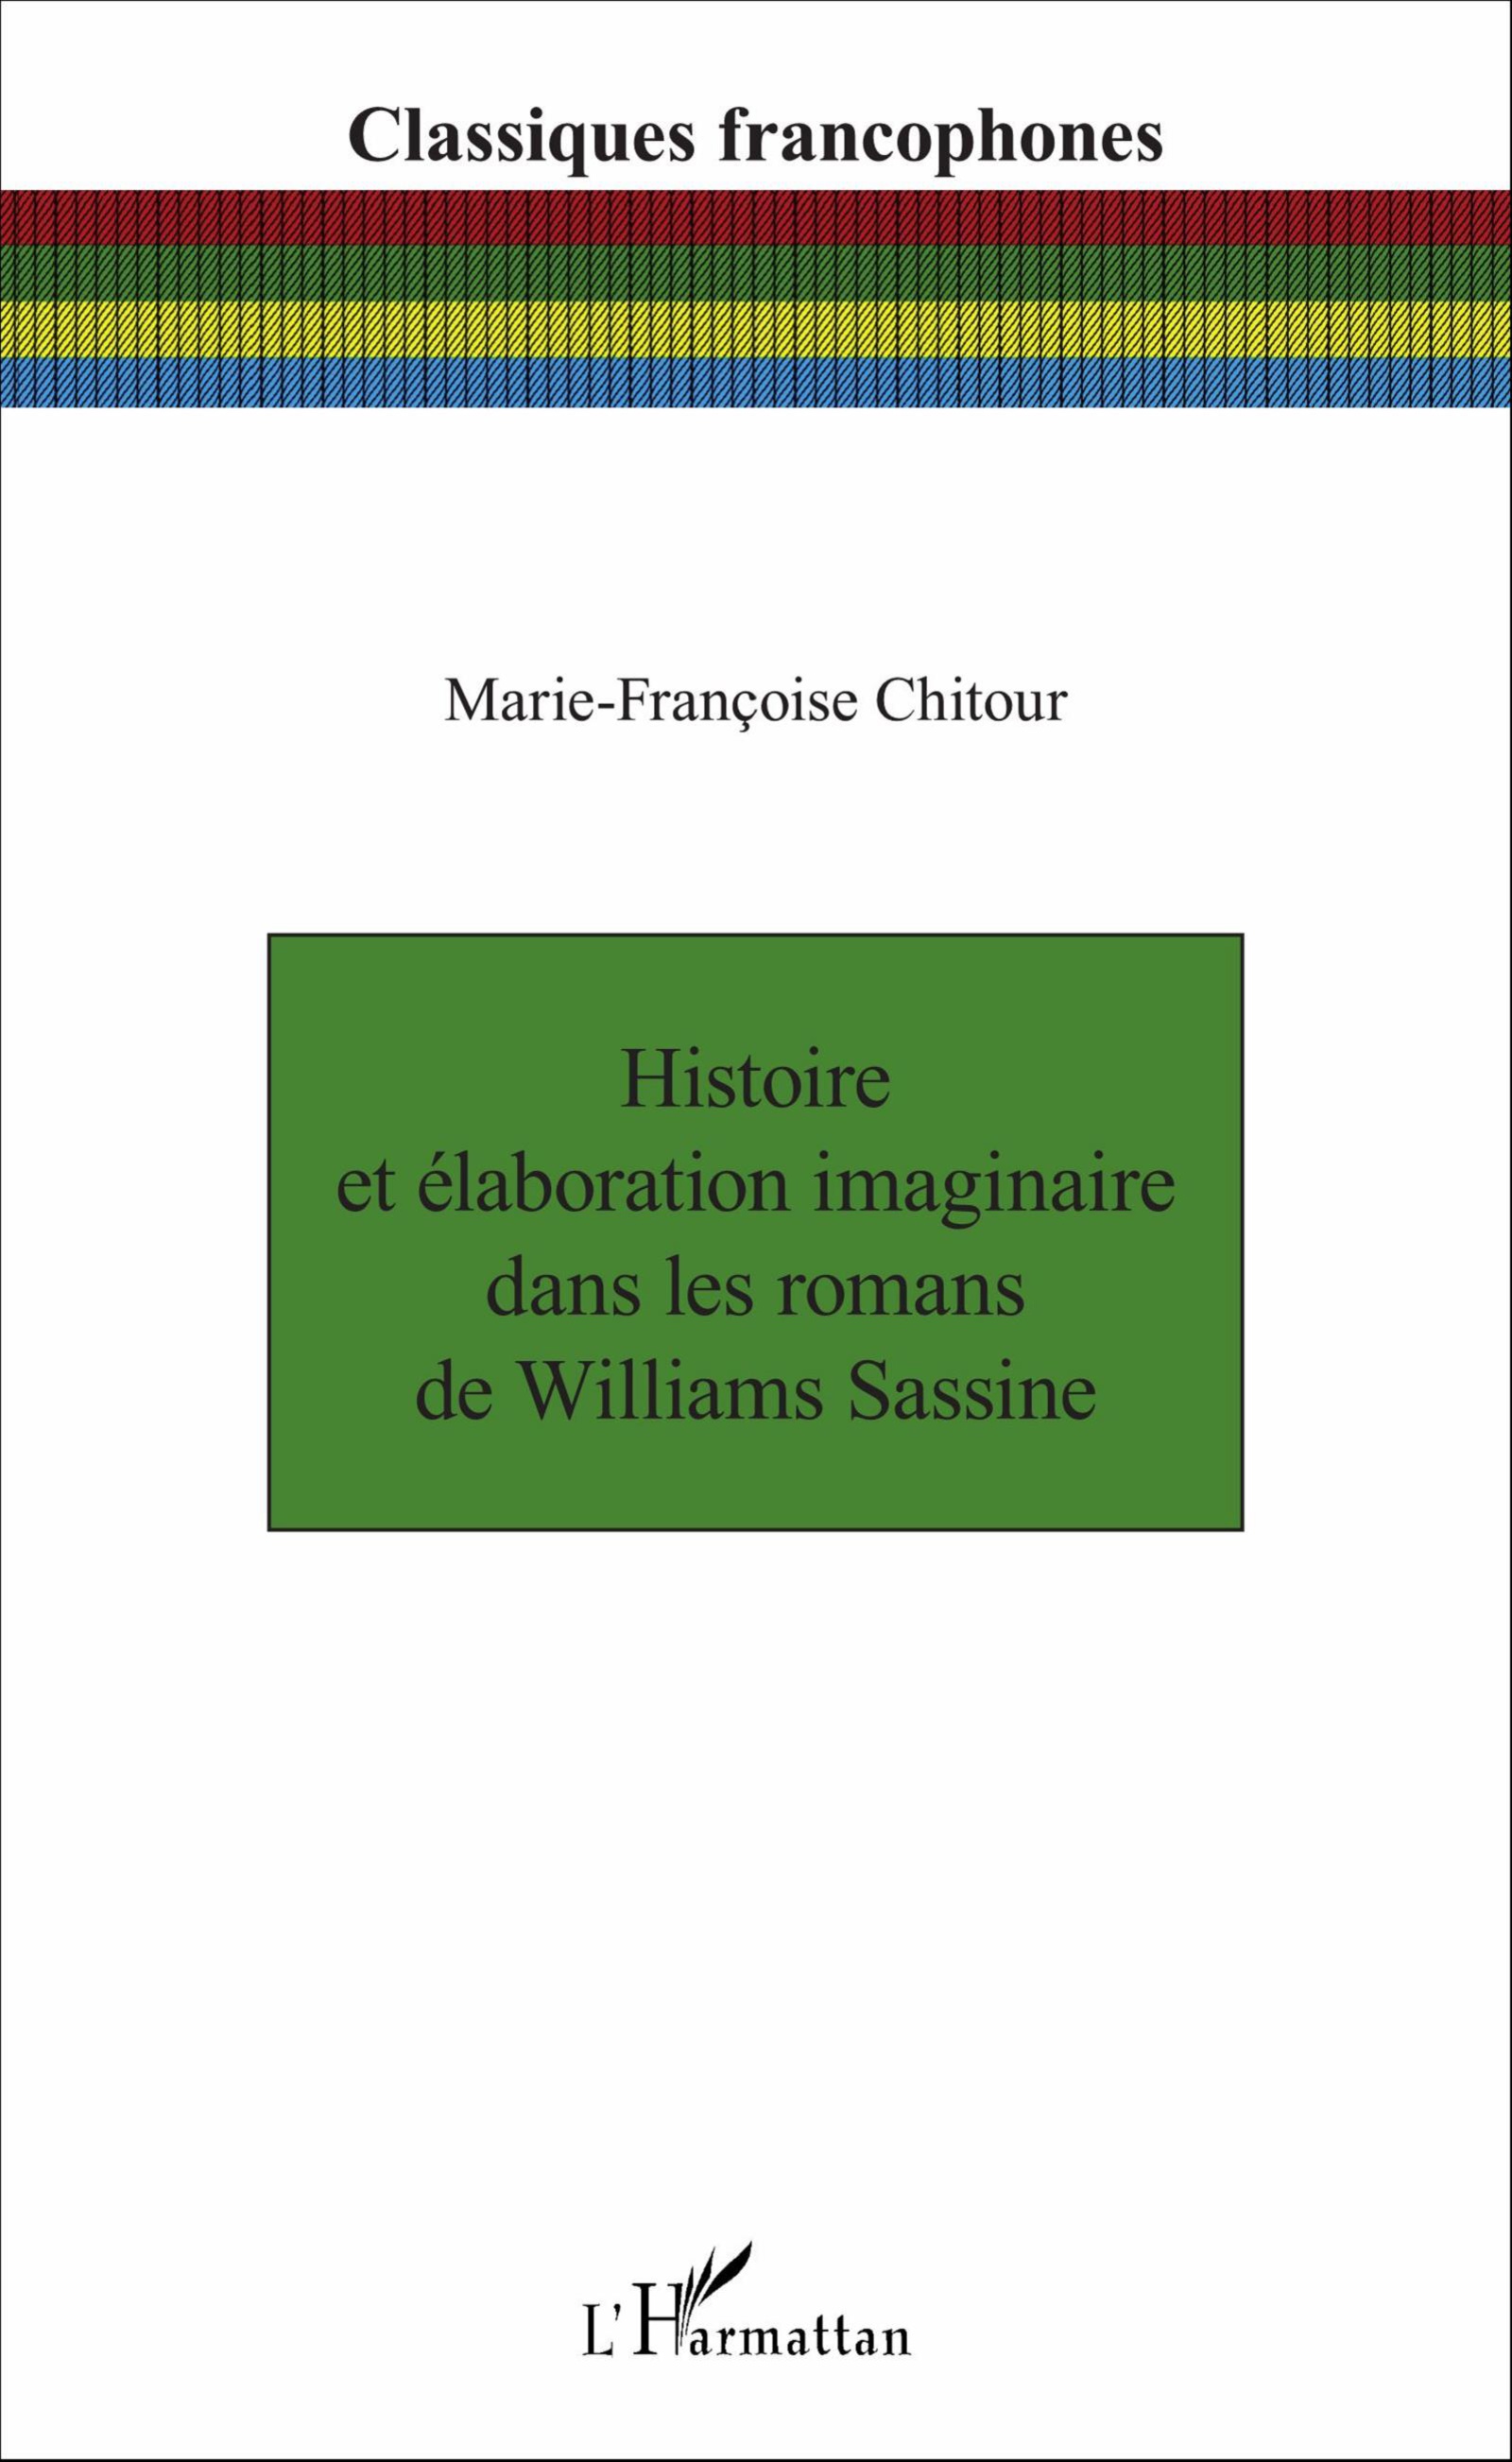 M.-Fr. Chitour, Histoire et élaboration imaginaire dans les romans de Williams Sassine